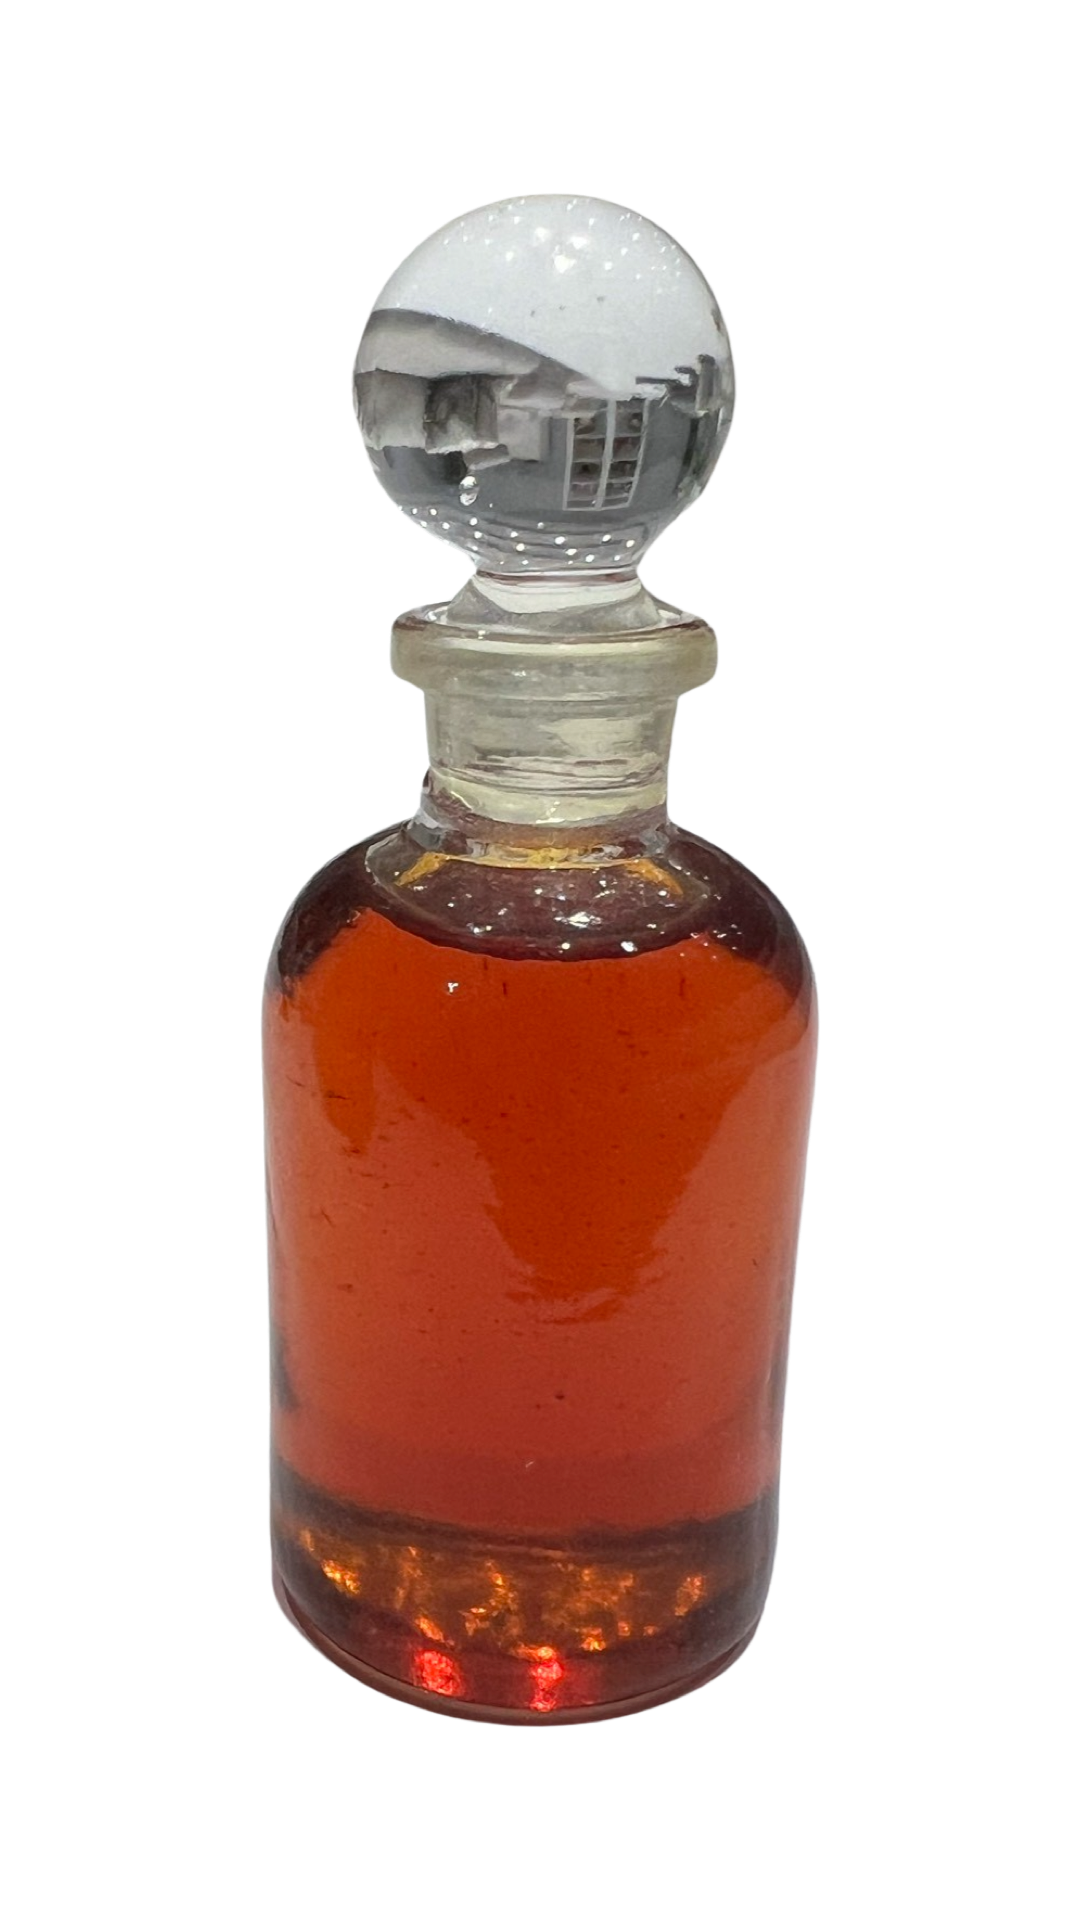 Vintage Cestrum Nocturnum (Nachtblühender Jasmin) ätherisches Öl (1930er Jahre)